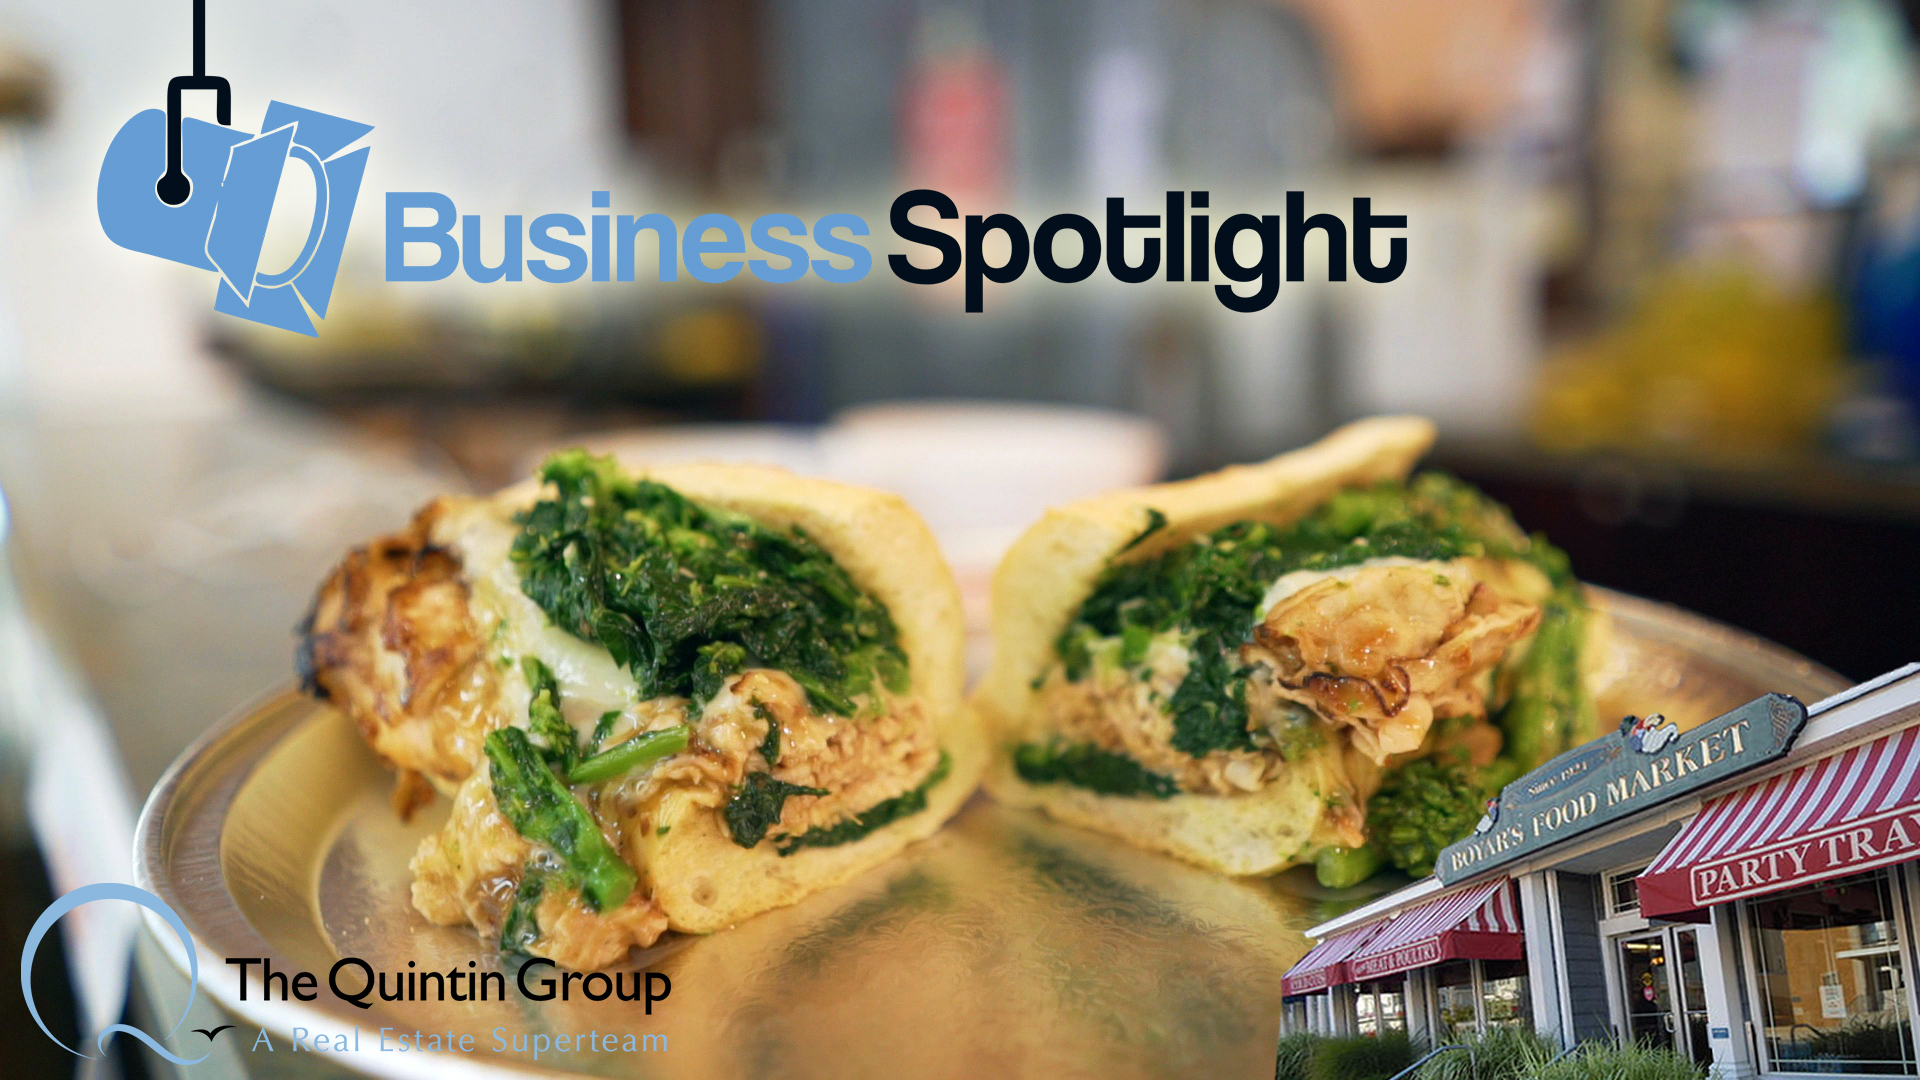 Business Spotlight: Boyar's Food Market